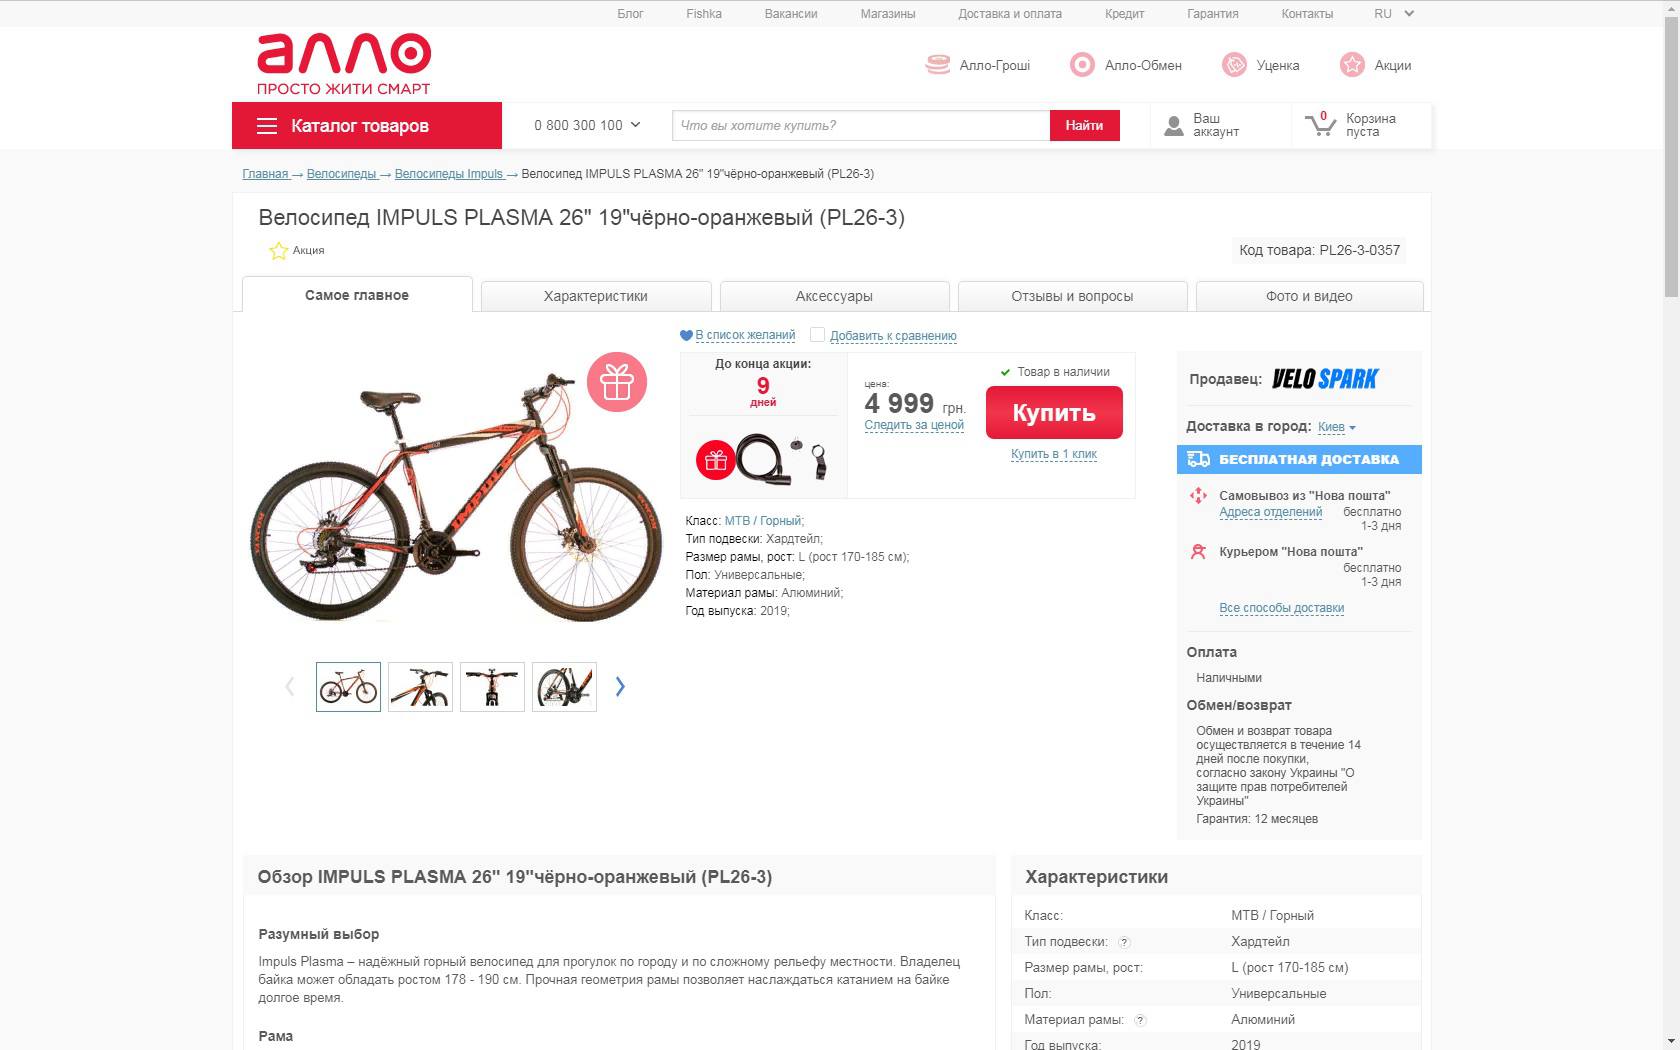 Велосипед на рост 170. Как накопить на велосипед. ОПМ велосипед. Как быстро накопить на велосипед. Велосипед купить 10000 рублей.